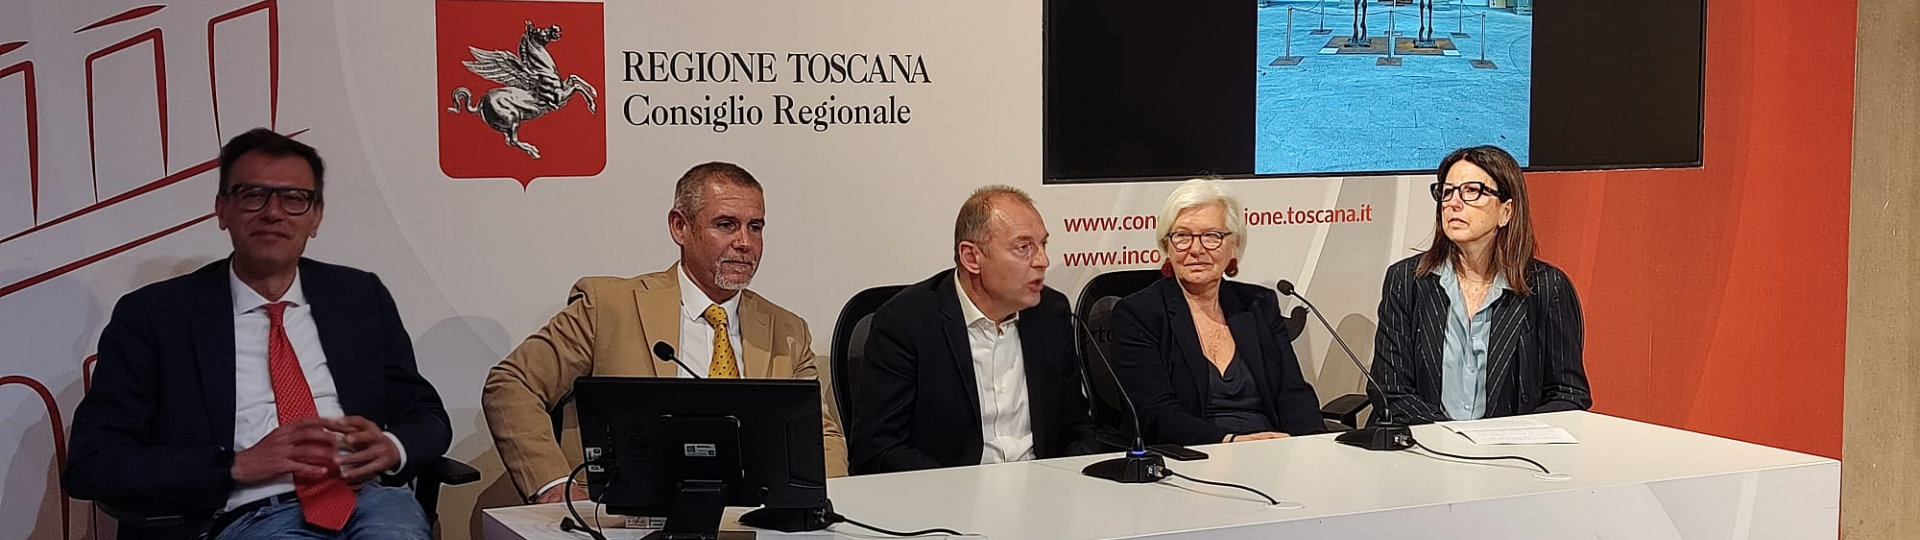 immagine presentazione mostra Sauro Cavallini Consiglio Regione Toscana